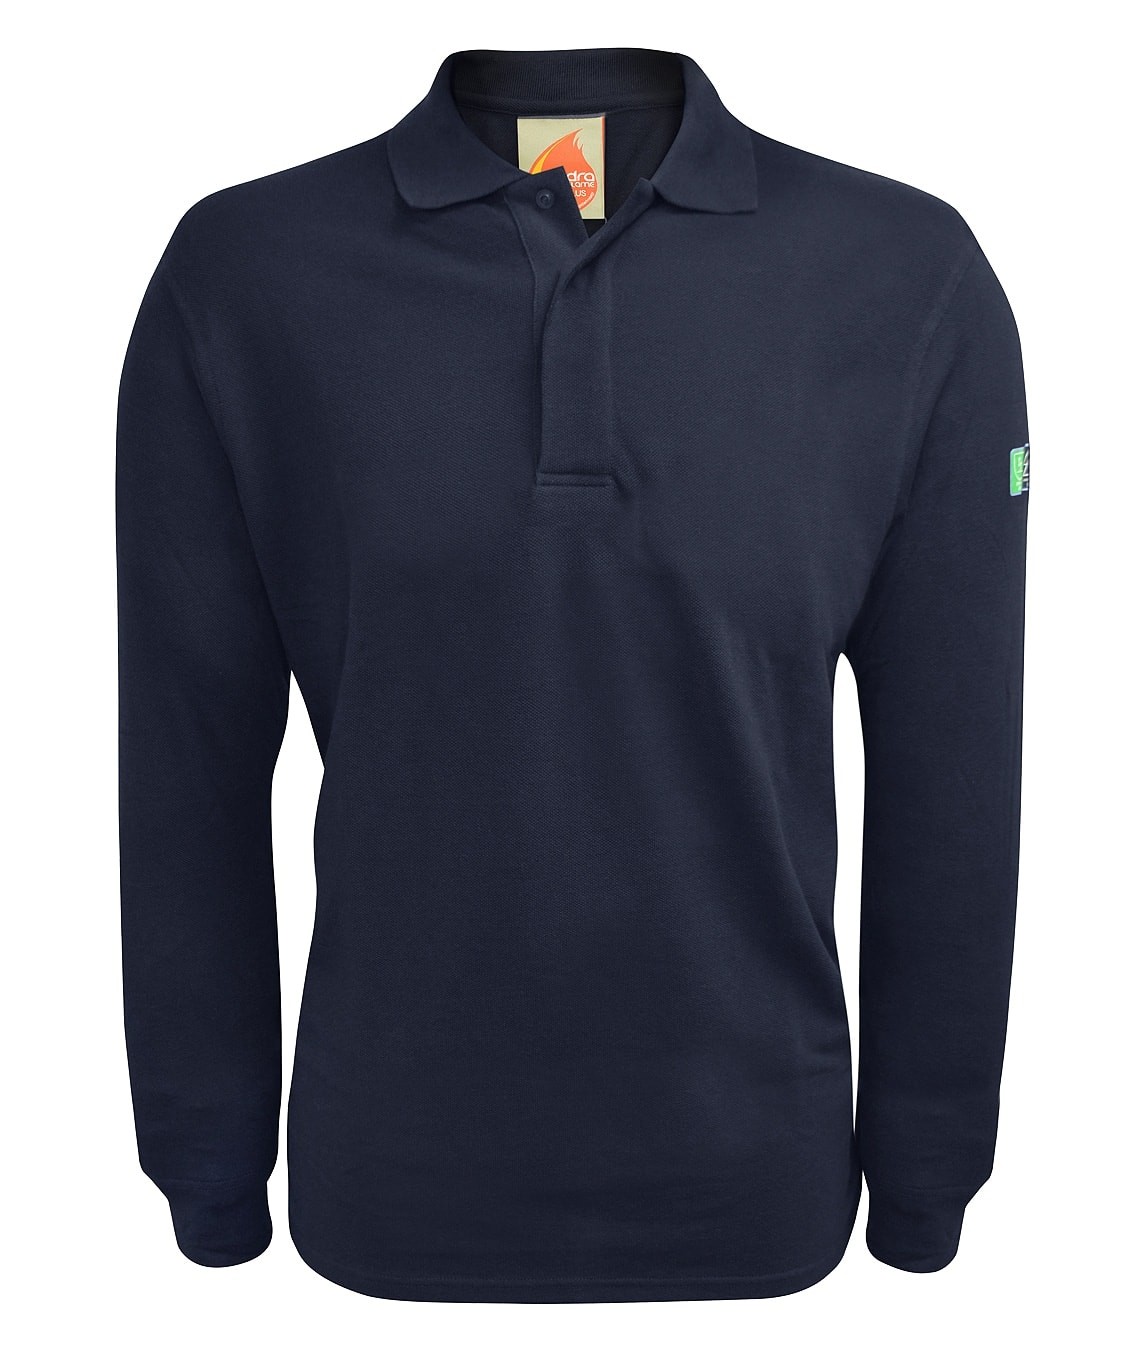 Baird: Inherent Fr Arc Long Sleeve Polo Shirt